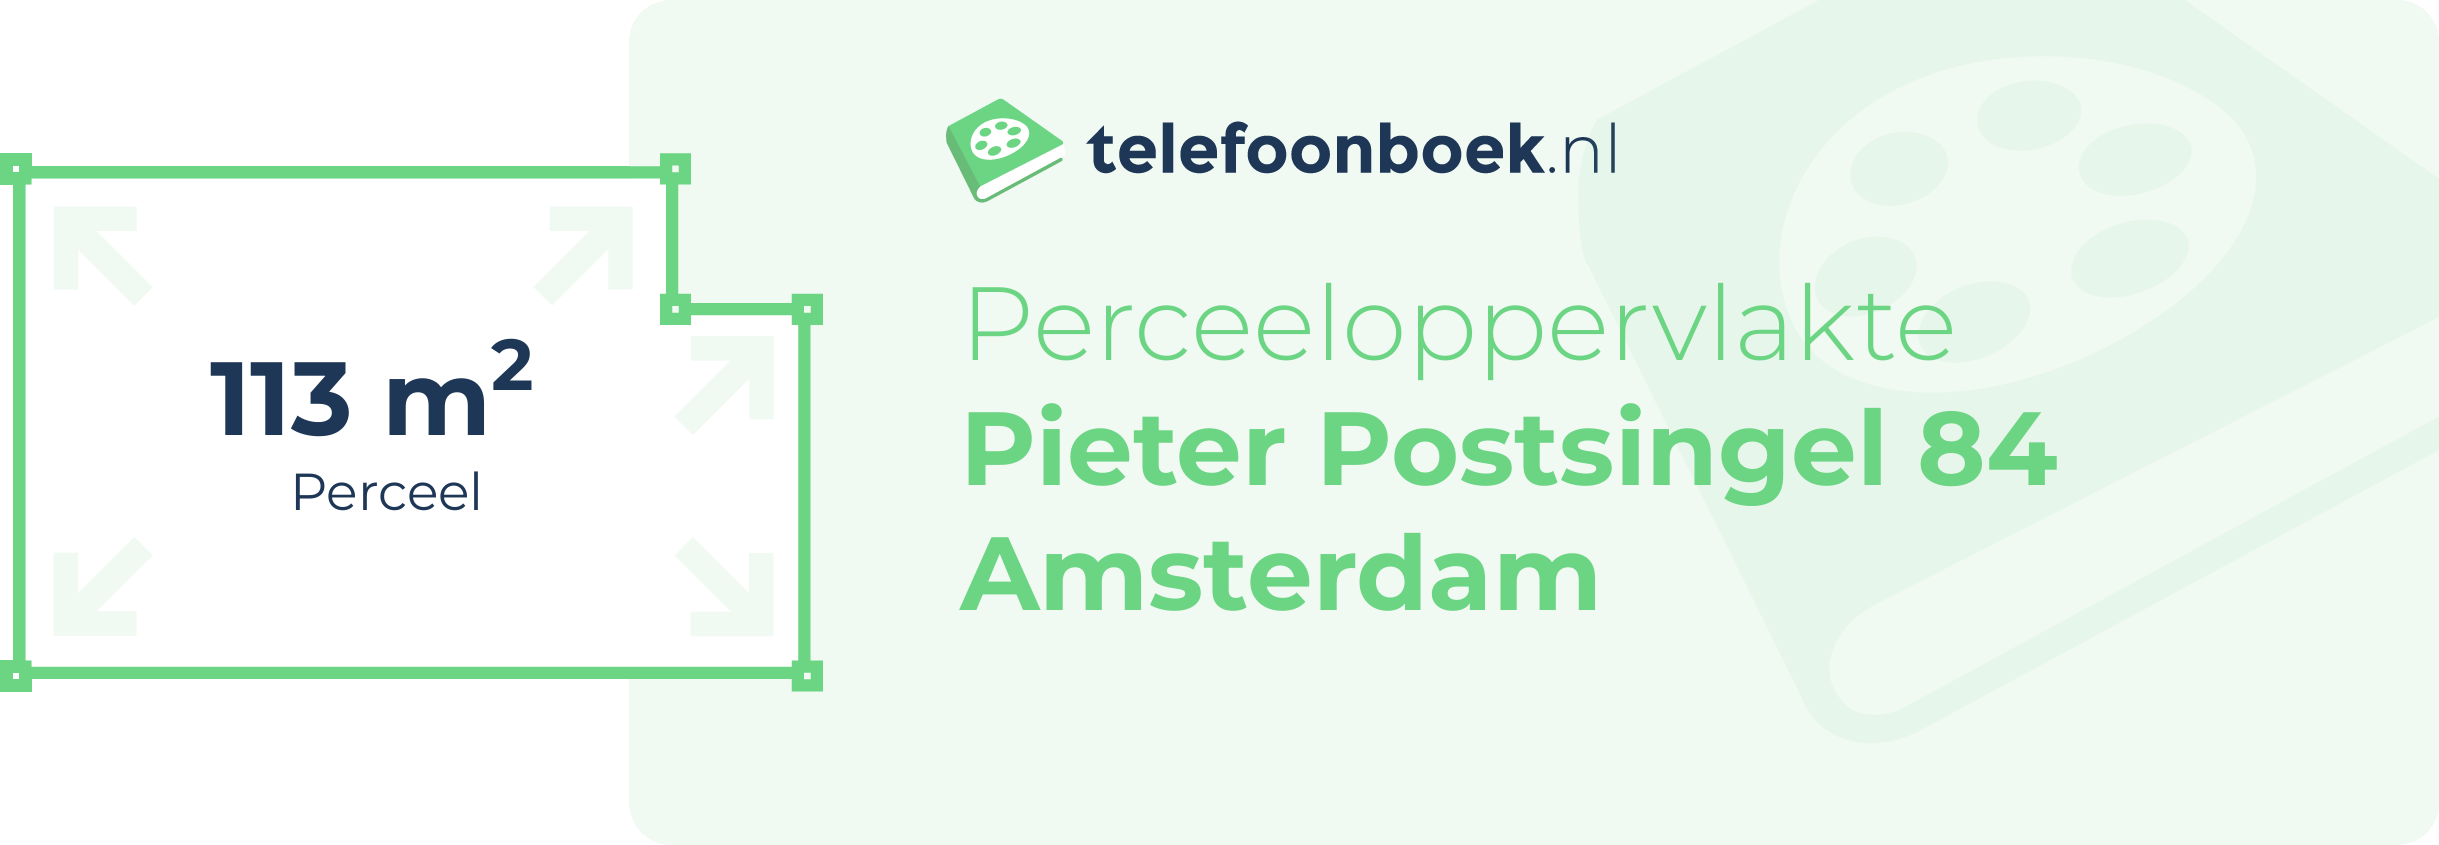 Perceeloppervlakte Pieter Postsingel 84 Amsterdam